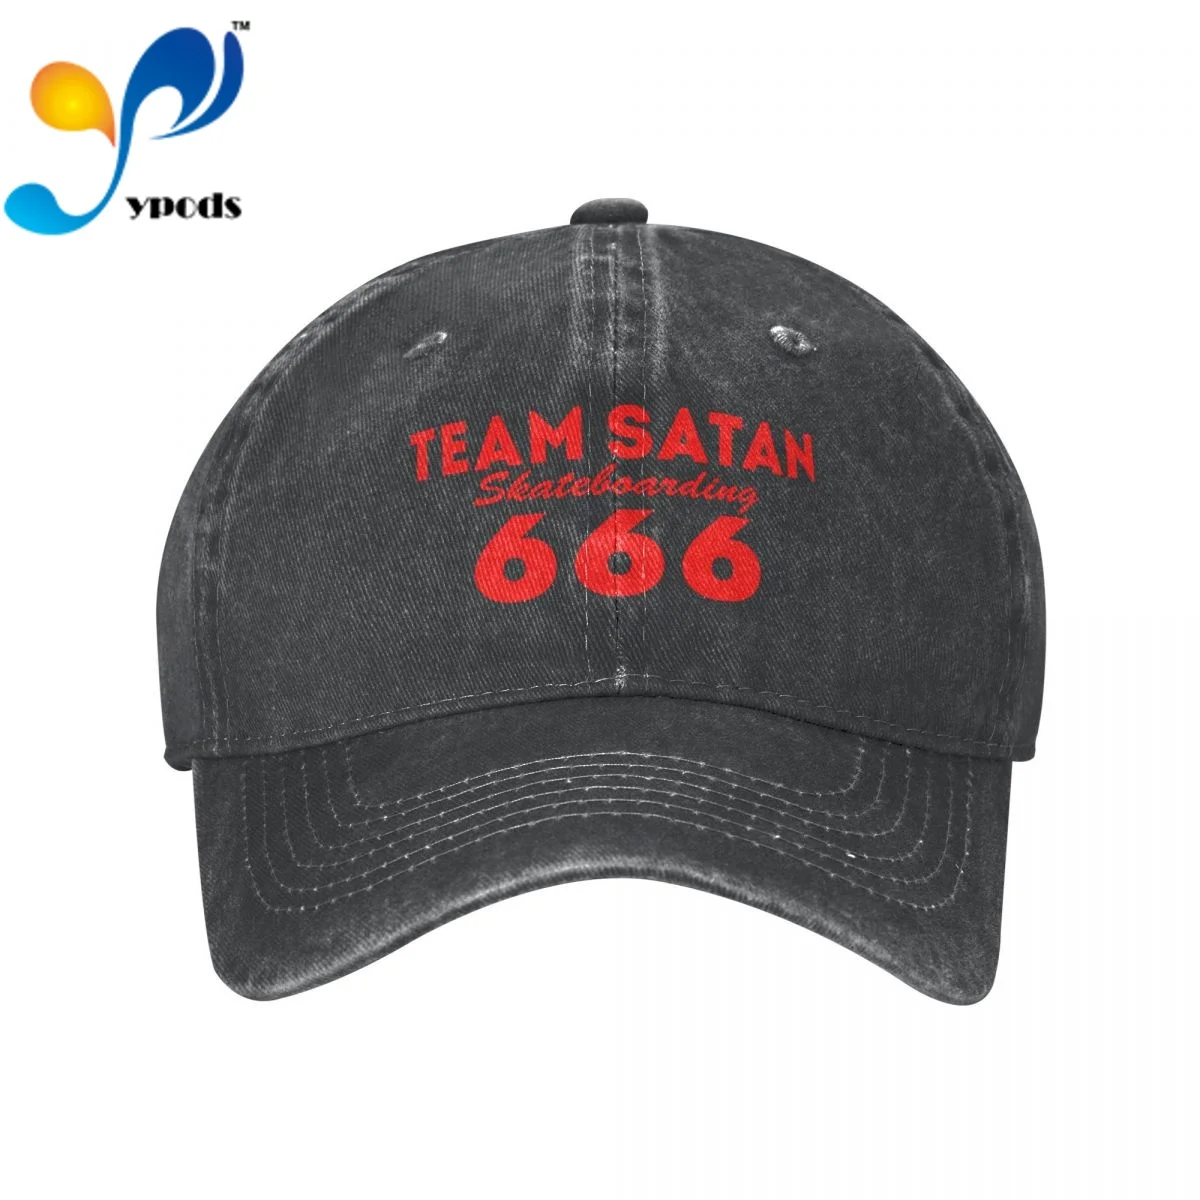 

Бейсболка унисекс TEAM сатана 666, мужская и женская Снэпбэк Кепка, кепка для отца, летняя кепка от солнца для мужчин и женщин, мужские кепки